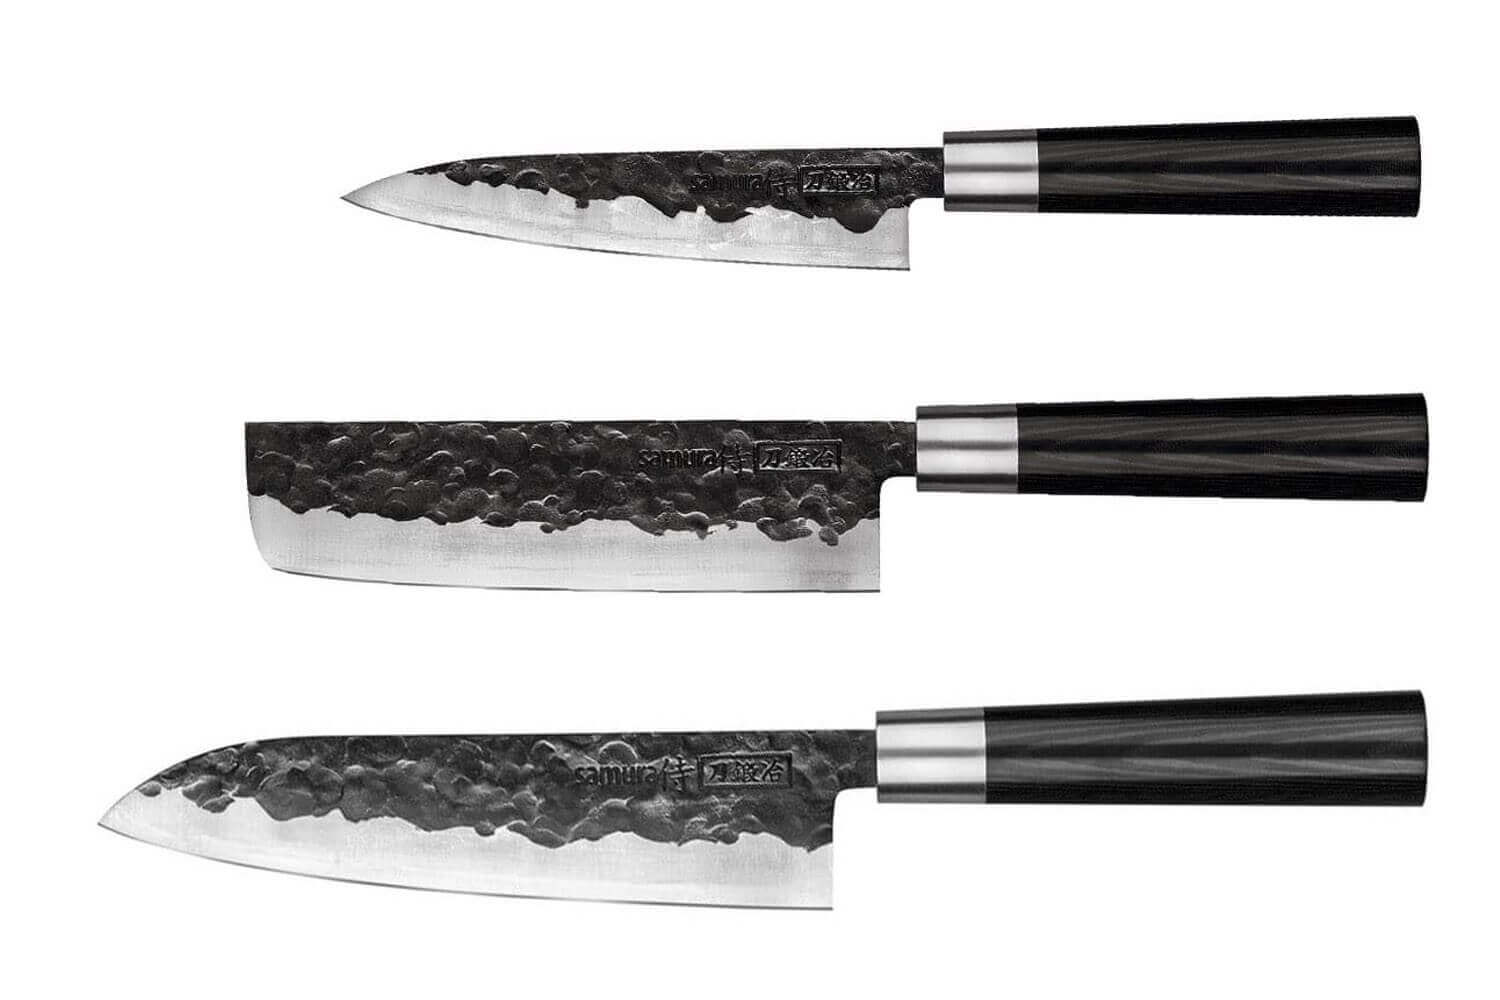 Samurai couteau ceramique 3 pcs,10/12 15 cm, blanc, couteau